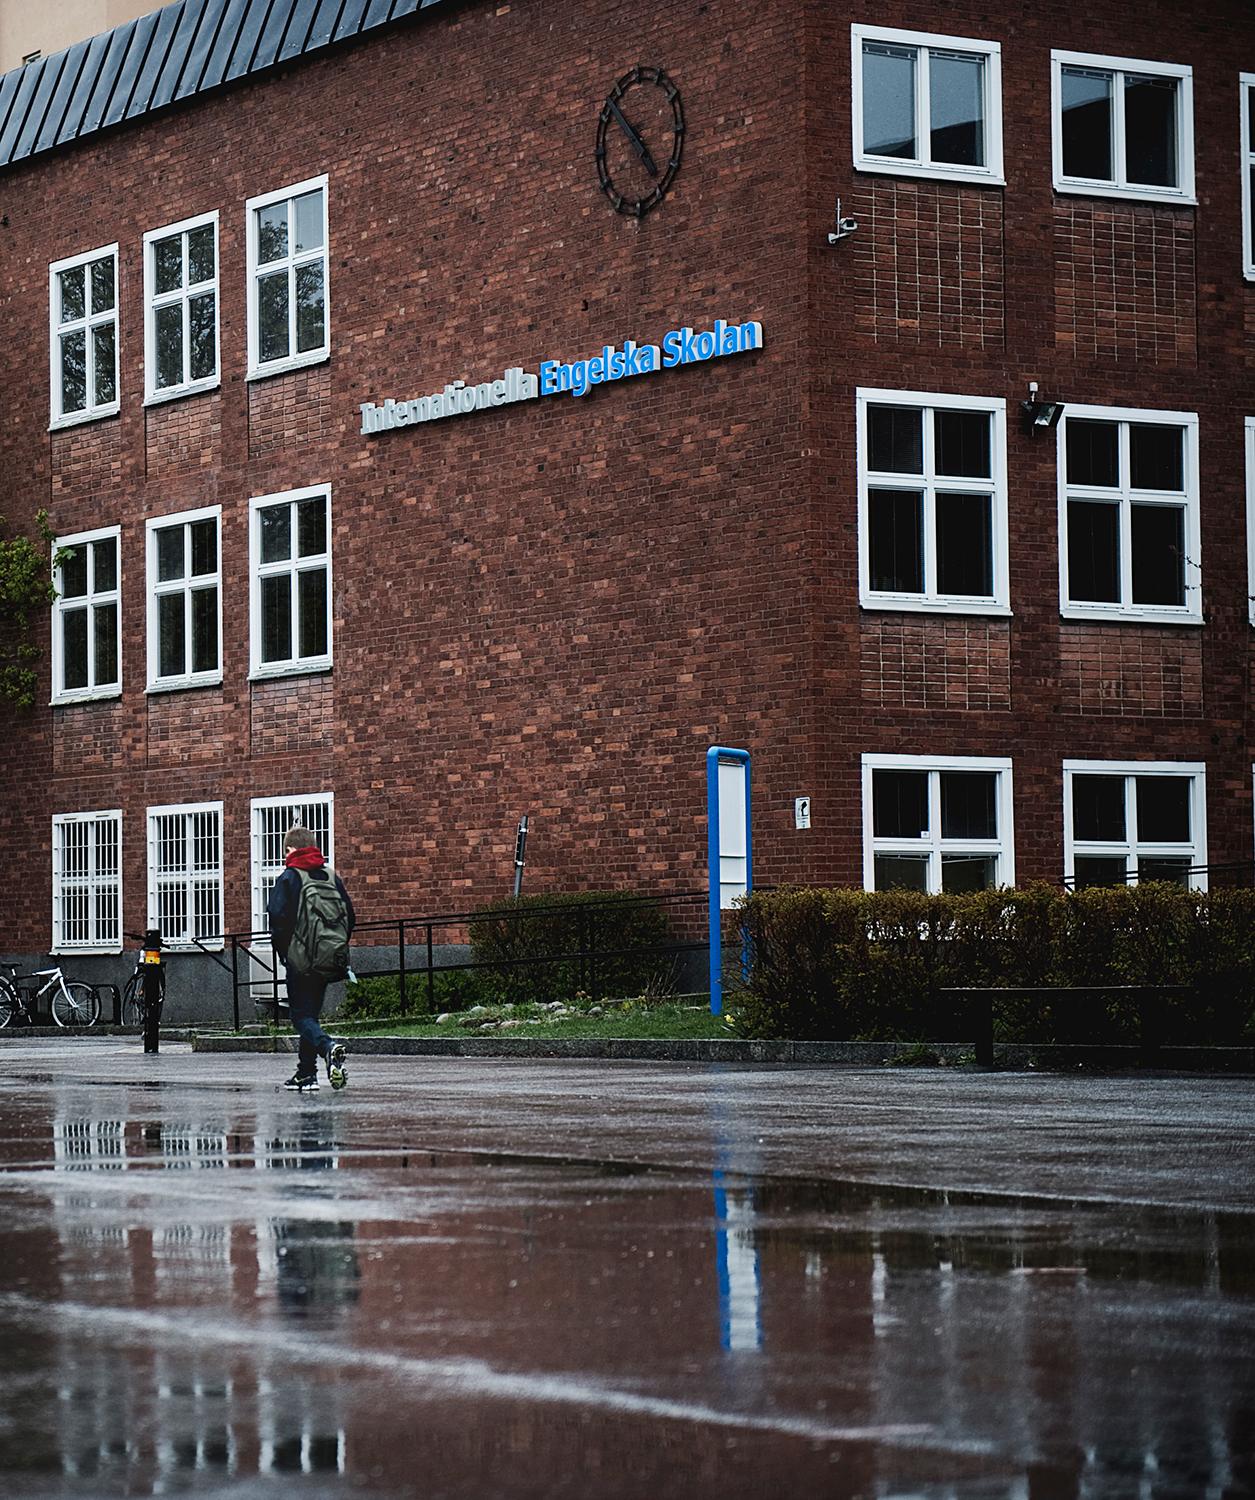 Internationella Engelska skolan i SaltsjöBaden.